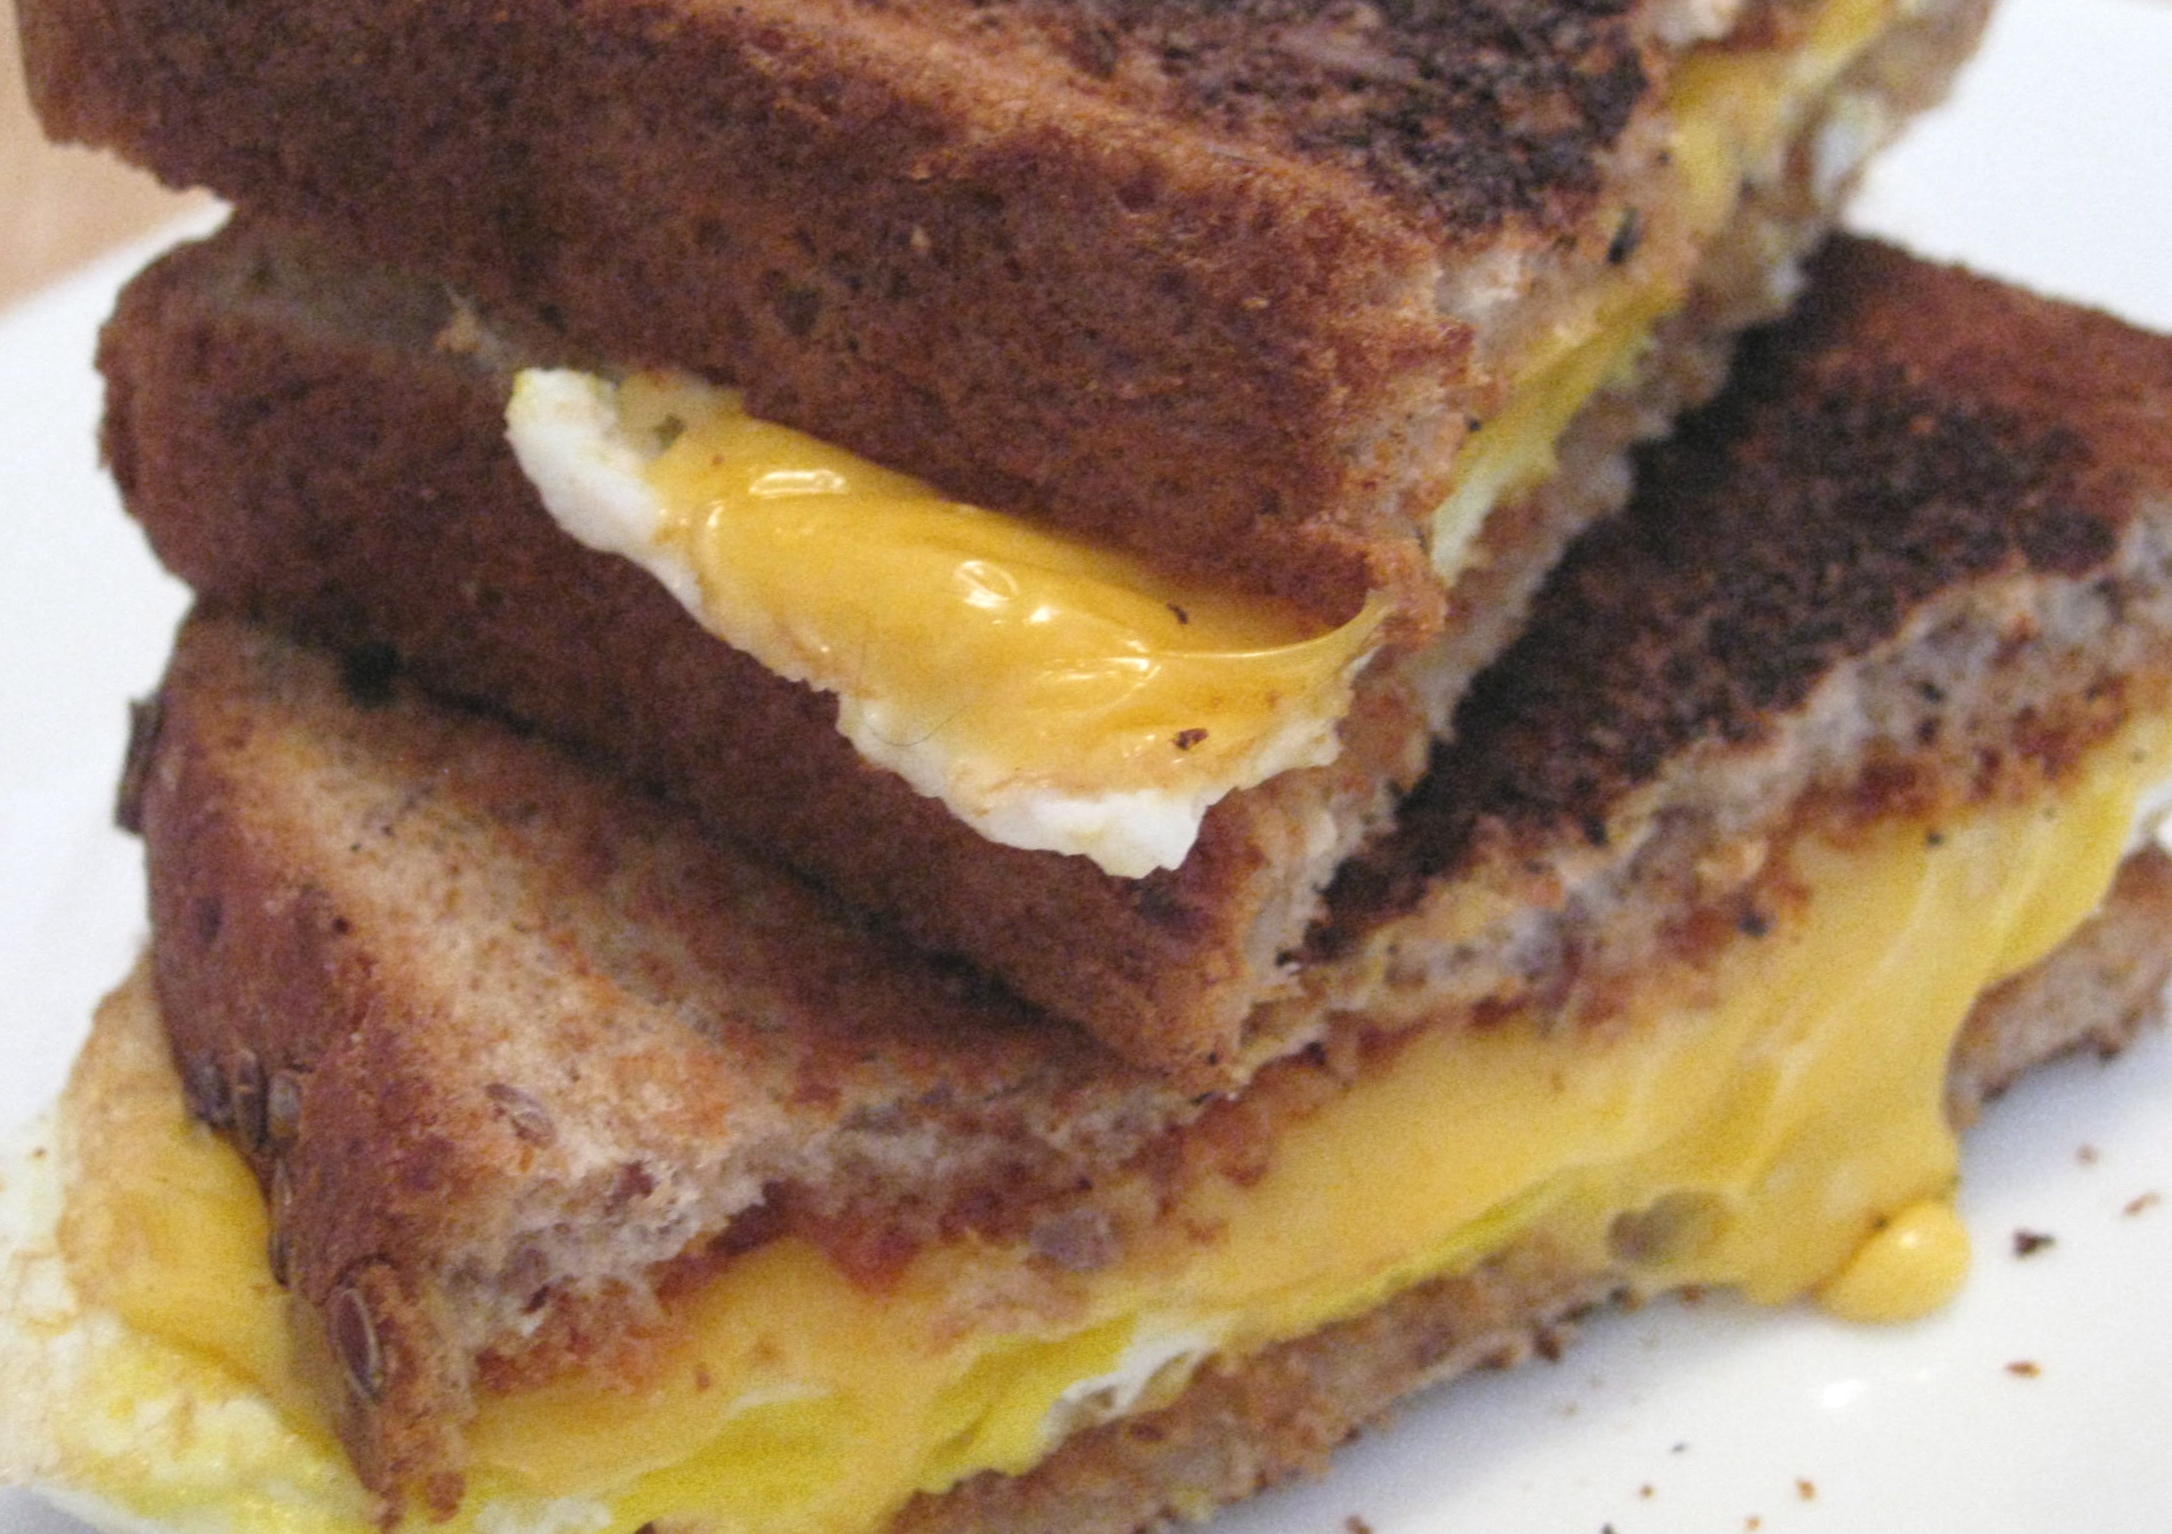 Fried Egg Sandwich 